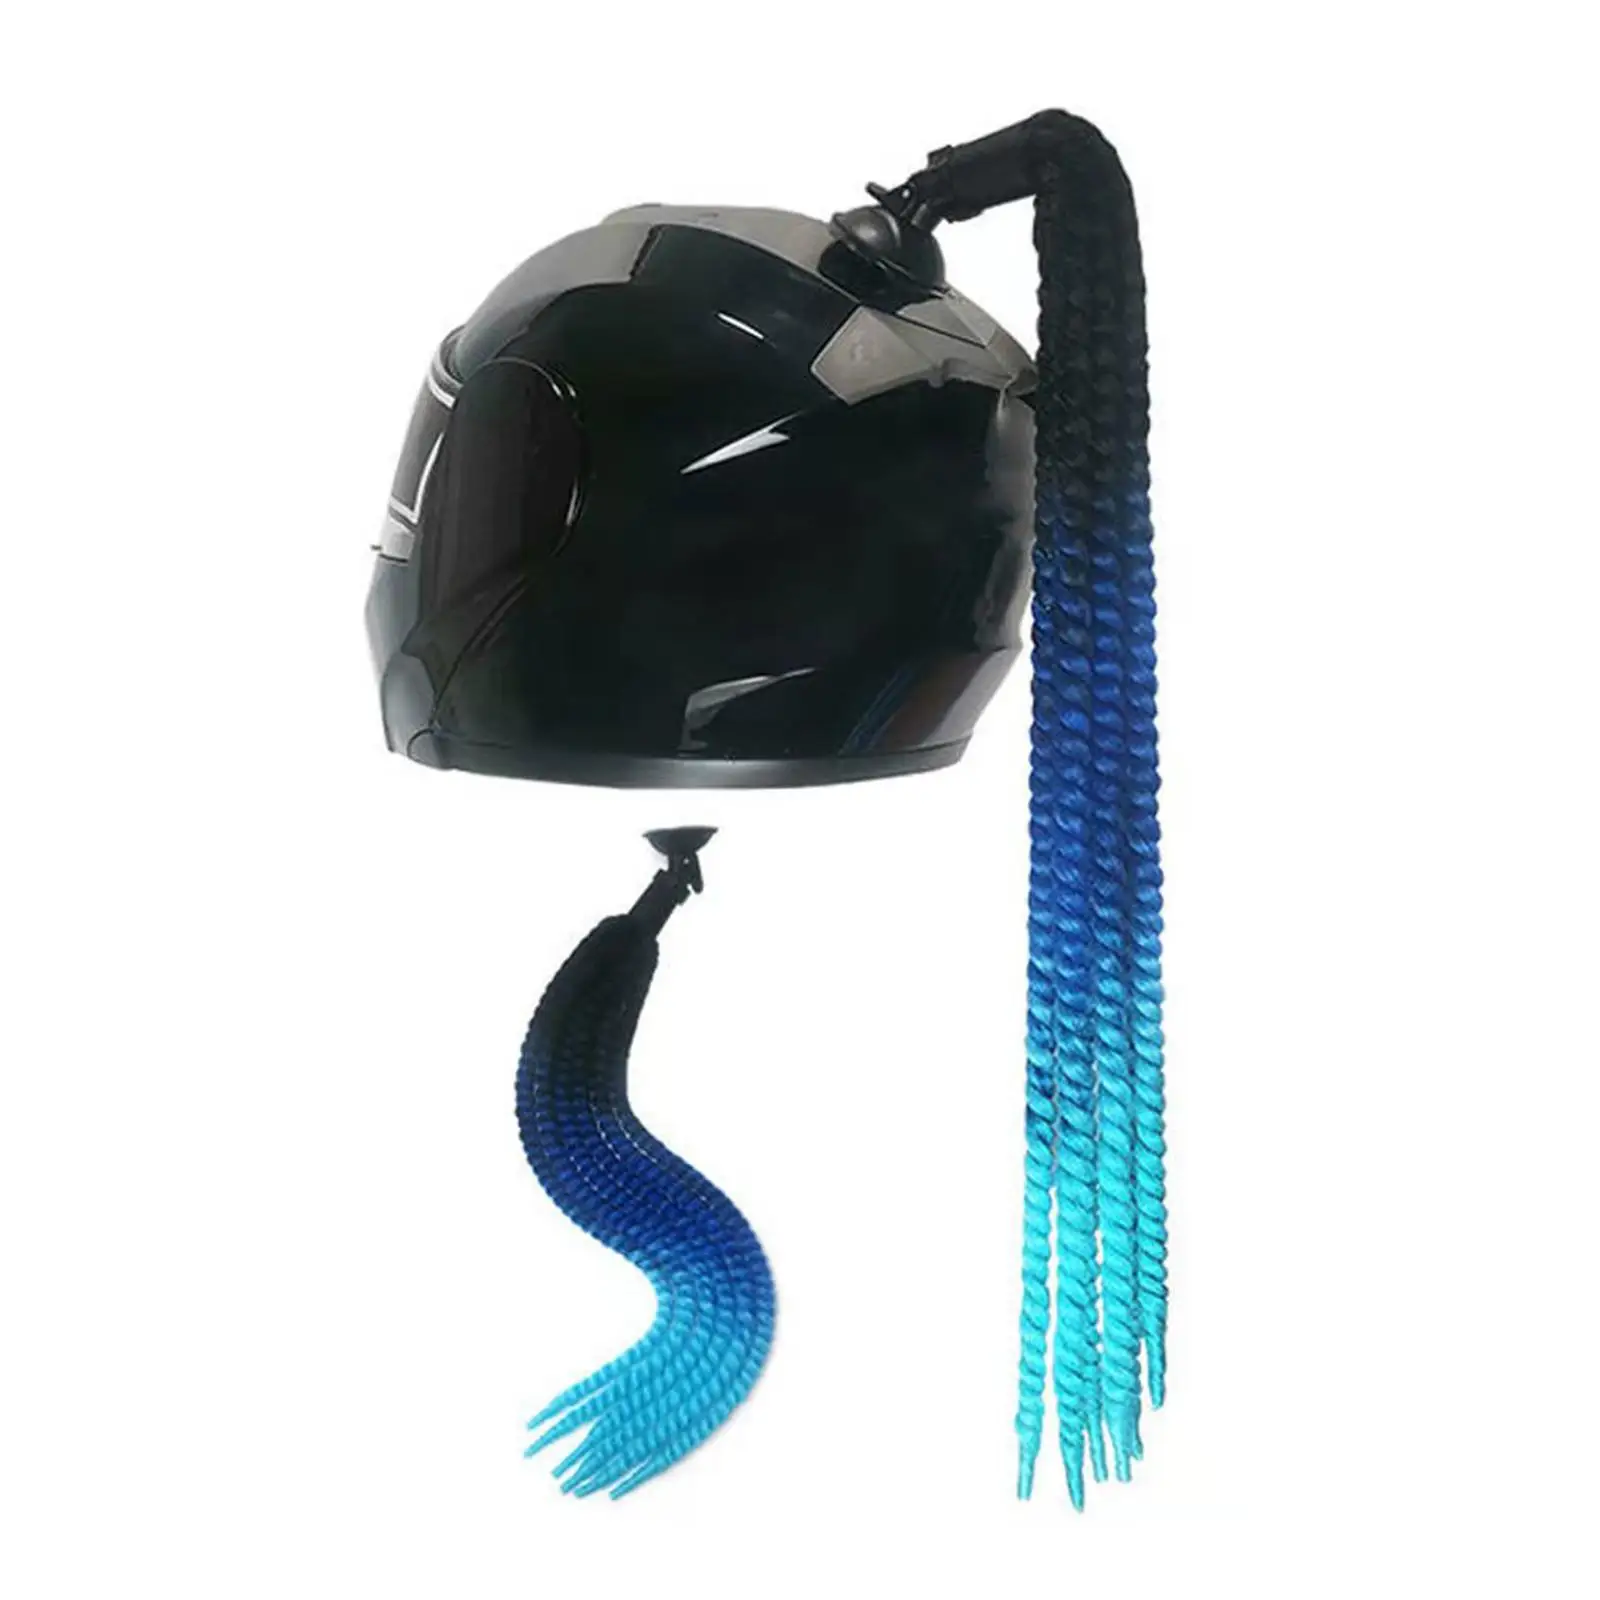 Helmet Pigtails 22inch (Helmet Not Included) Helmet Hair for Motorcycle